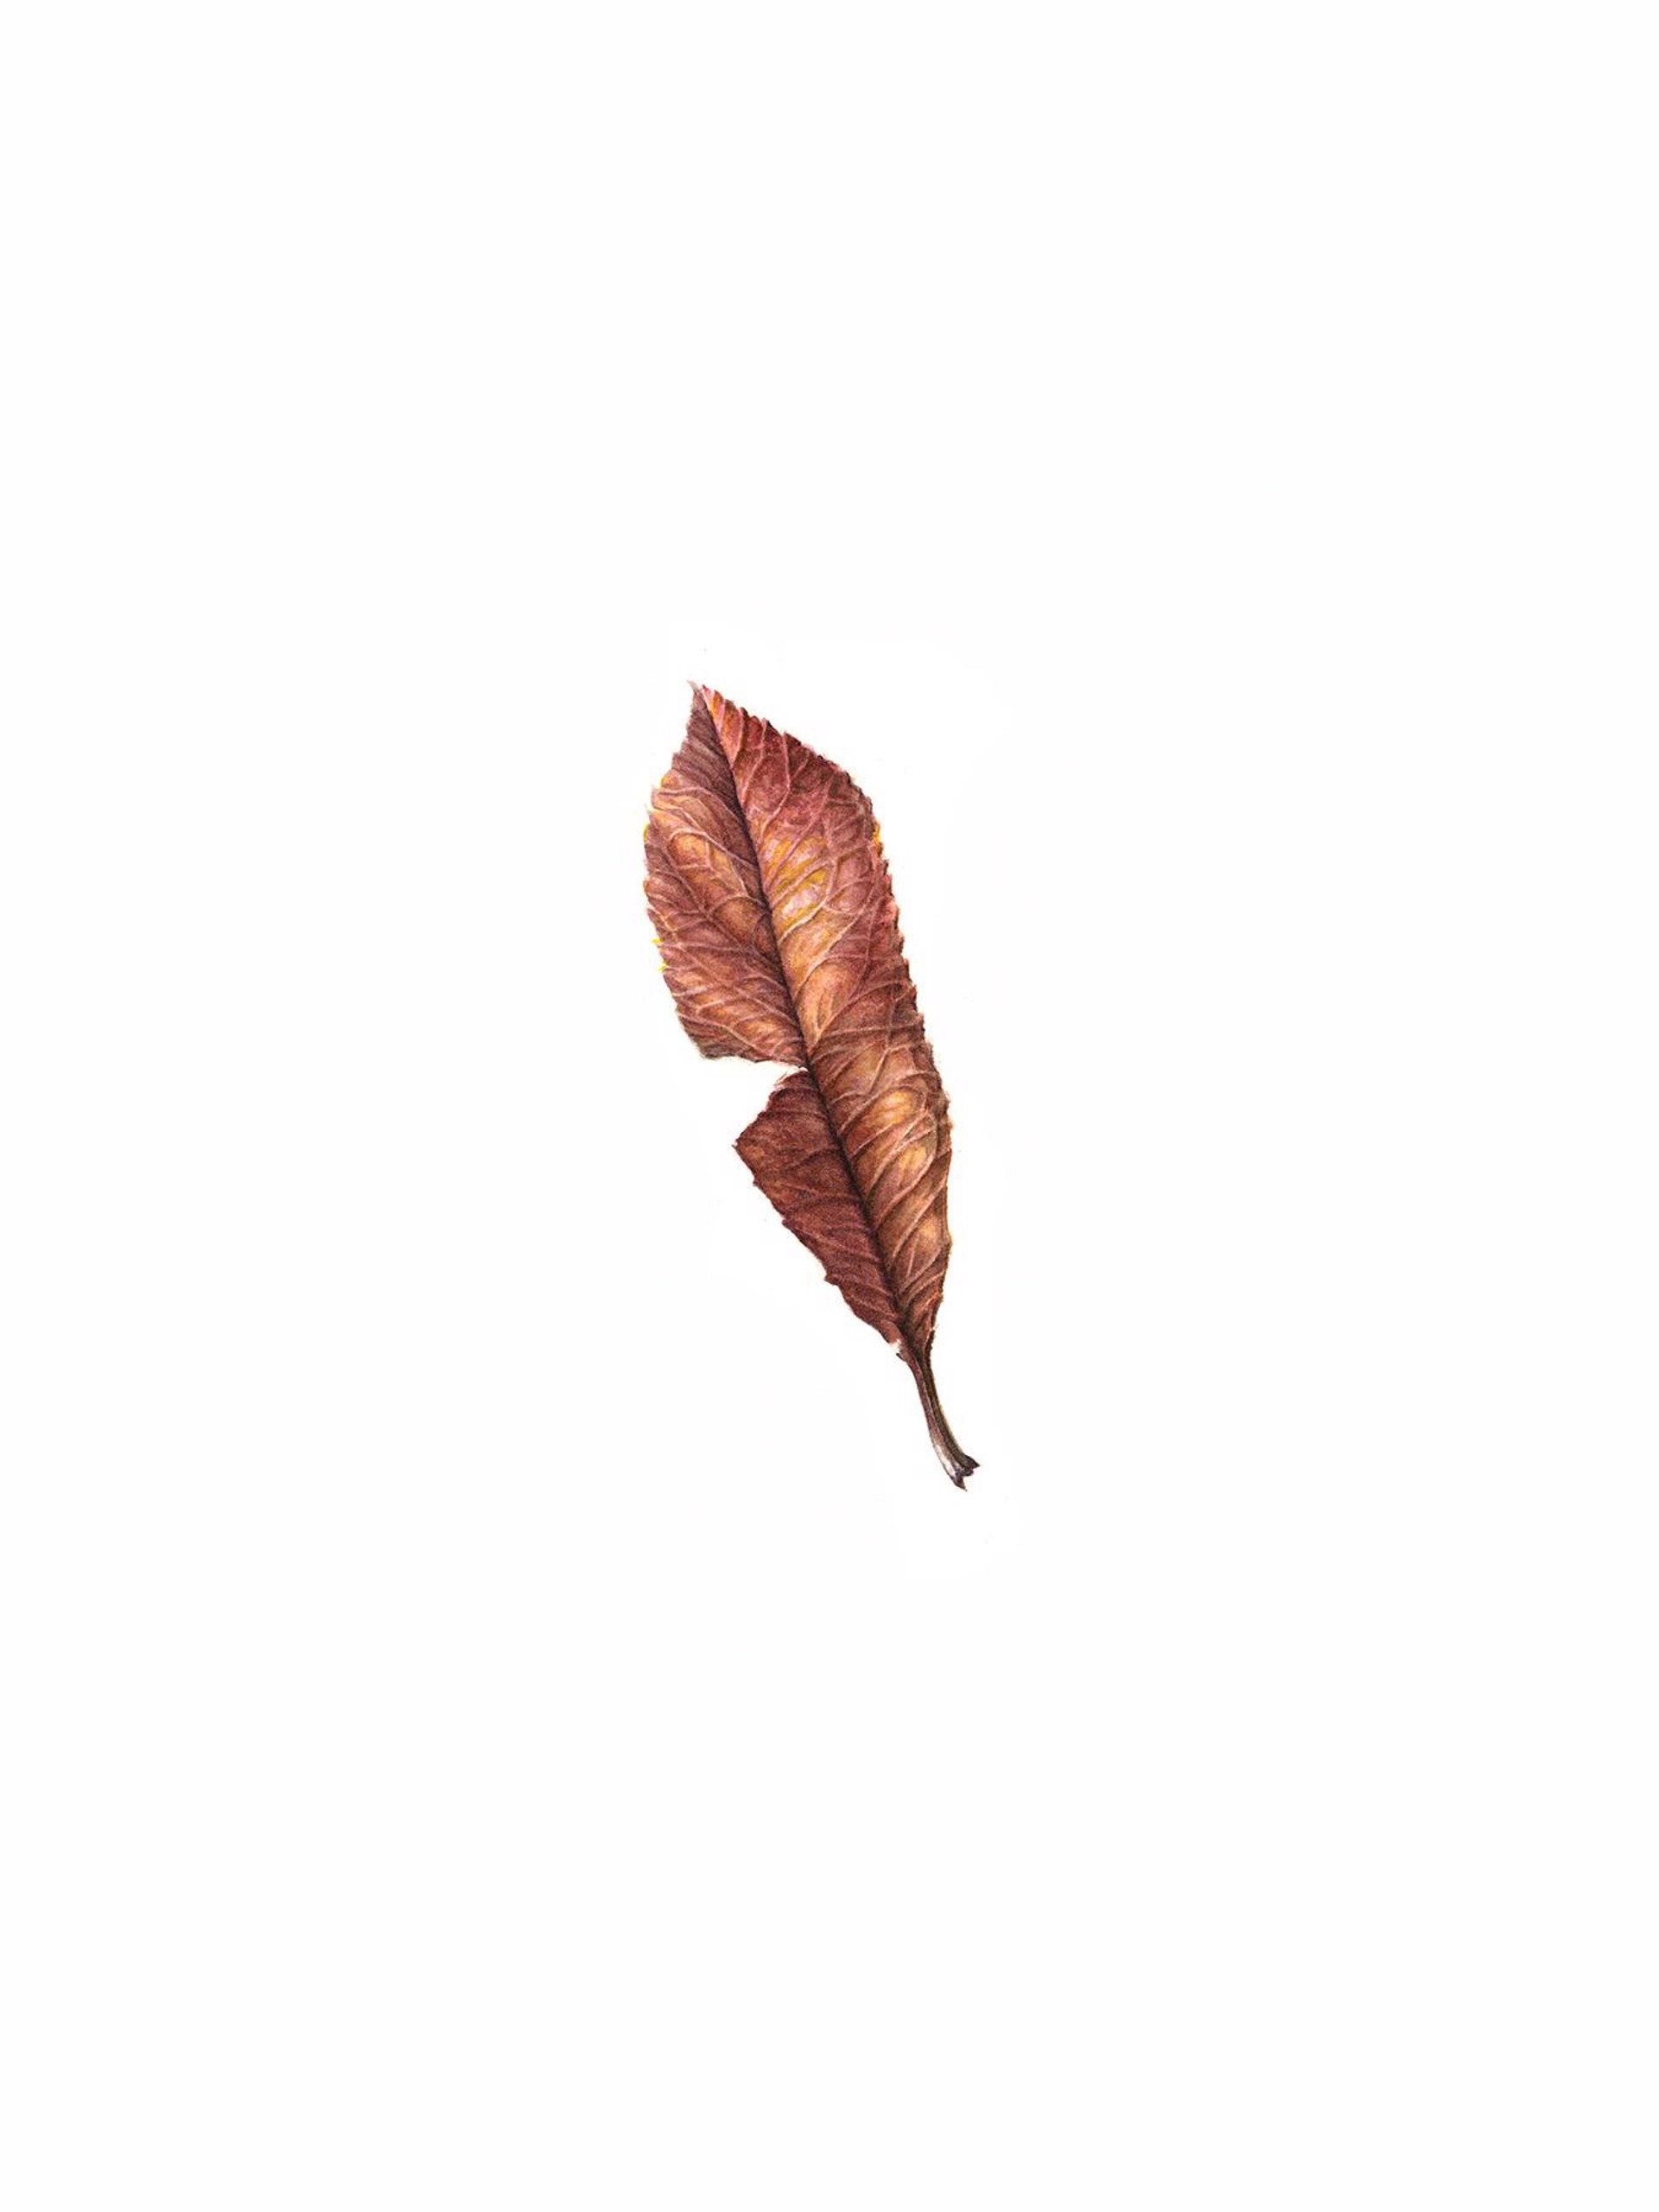 Decomposing Leaf by Helen Hagood Coxe